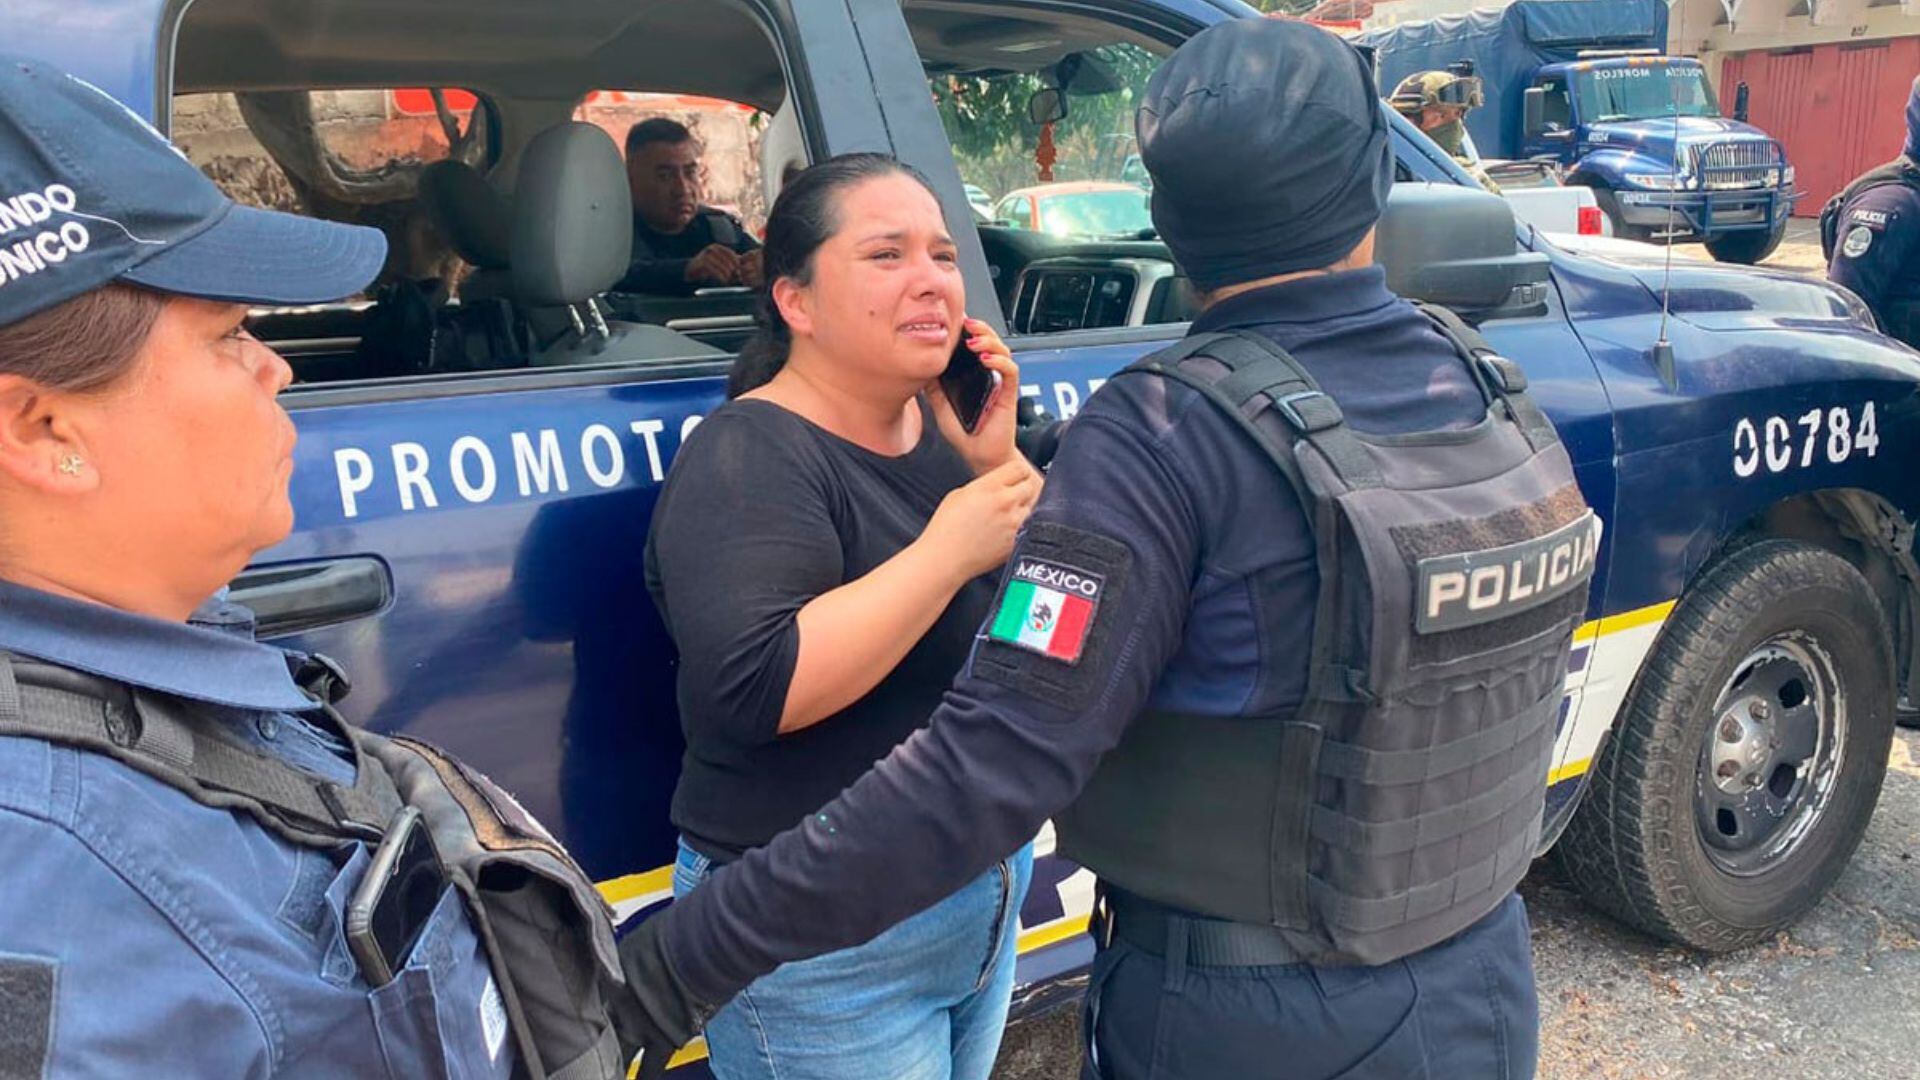 La periodista Estrella Pedroza se encontraba documentando la presencia de policías en la Fiscalía Anticorrupción. (X/@article19mex)